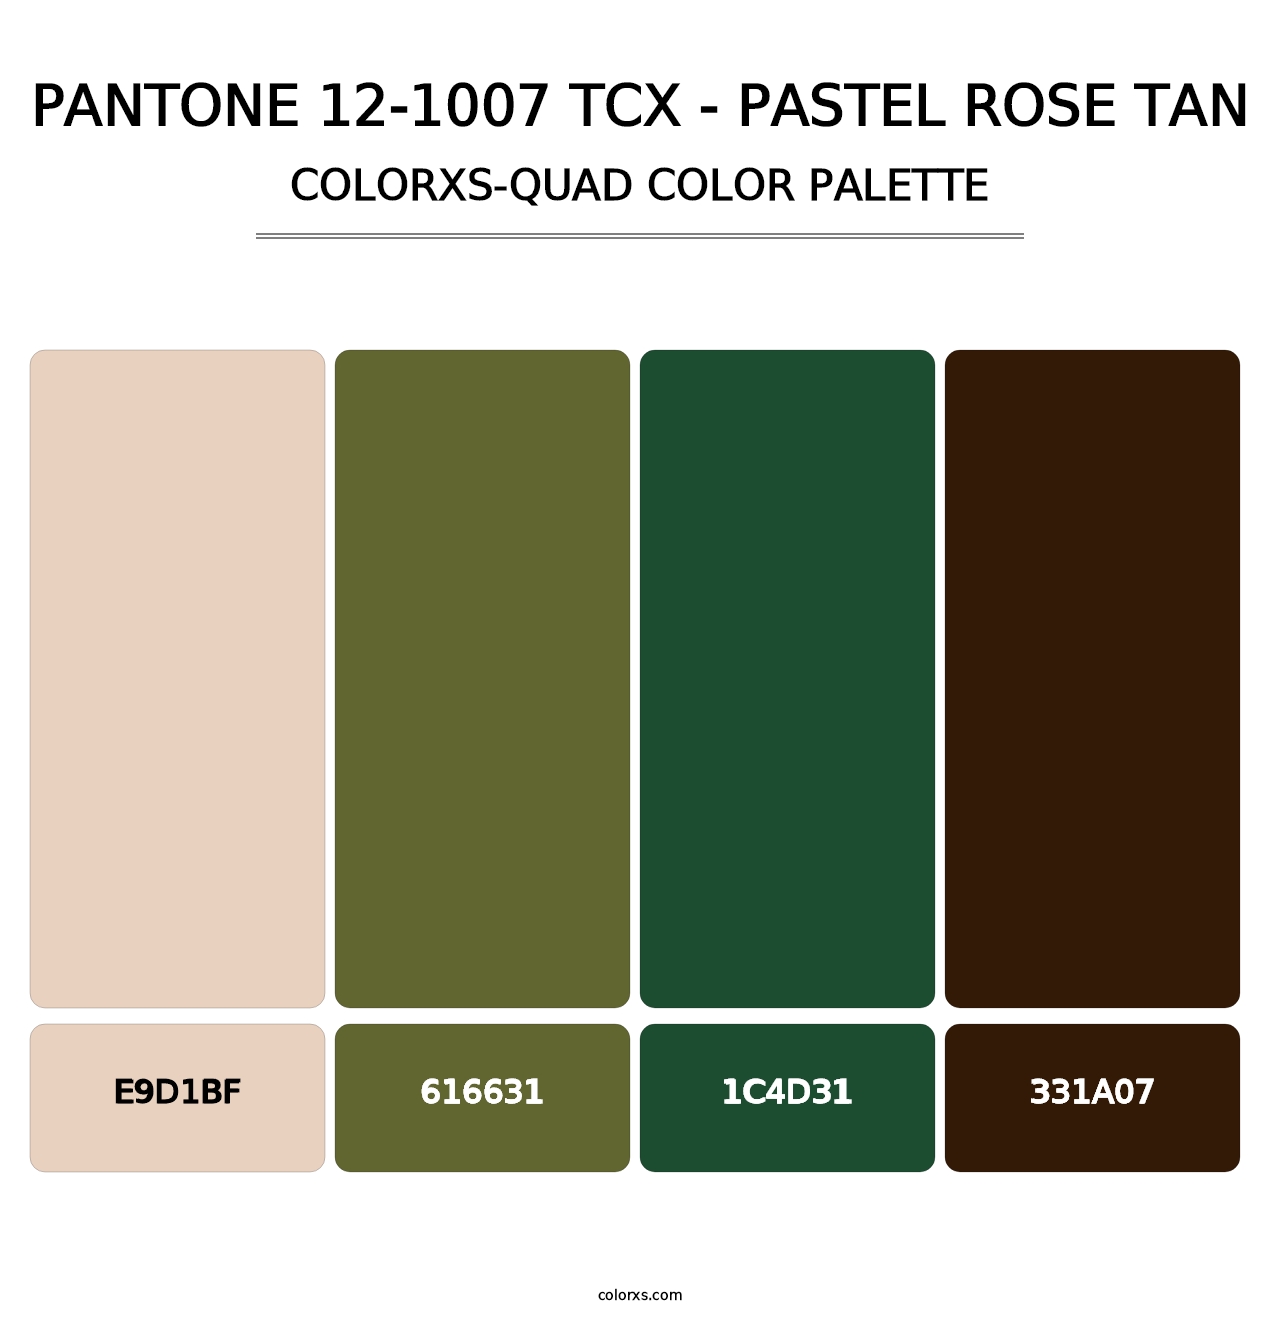 PANTONE 12-1007 TCX - Pastel Rose Tan - Colorxs Quad Palette